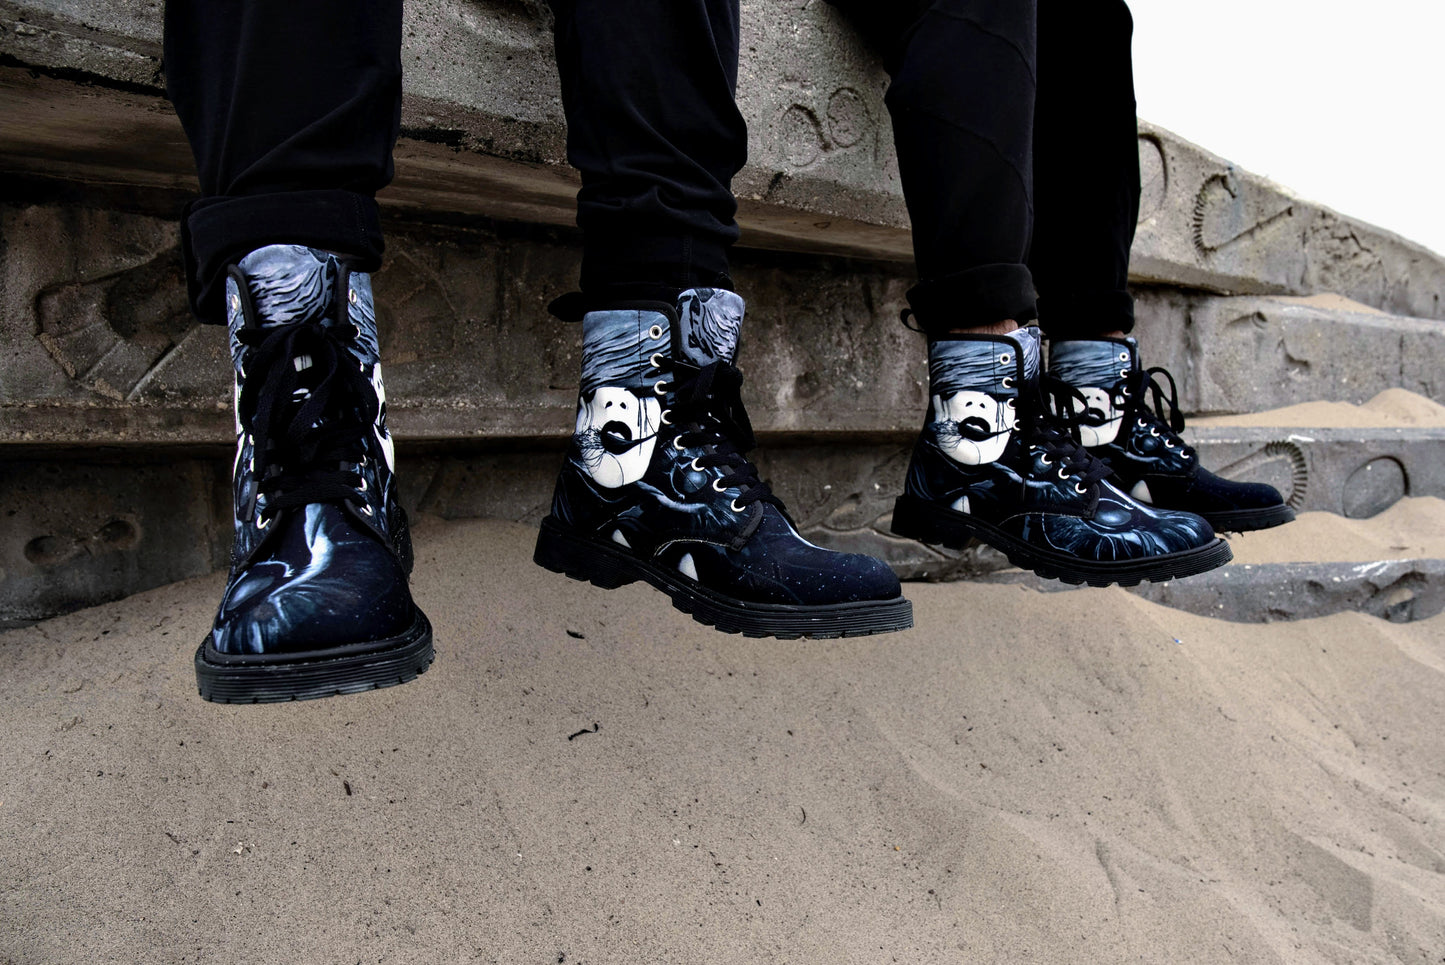 Fire (Noir) - Art Boots for Women